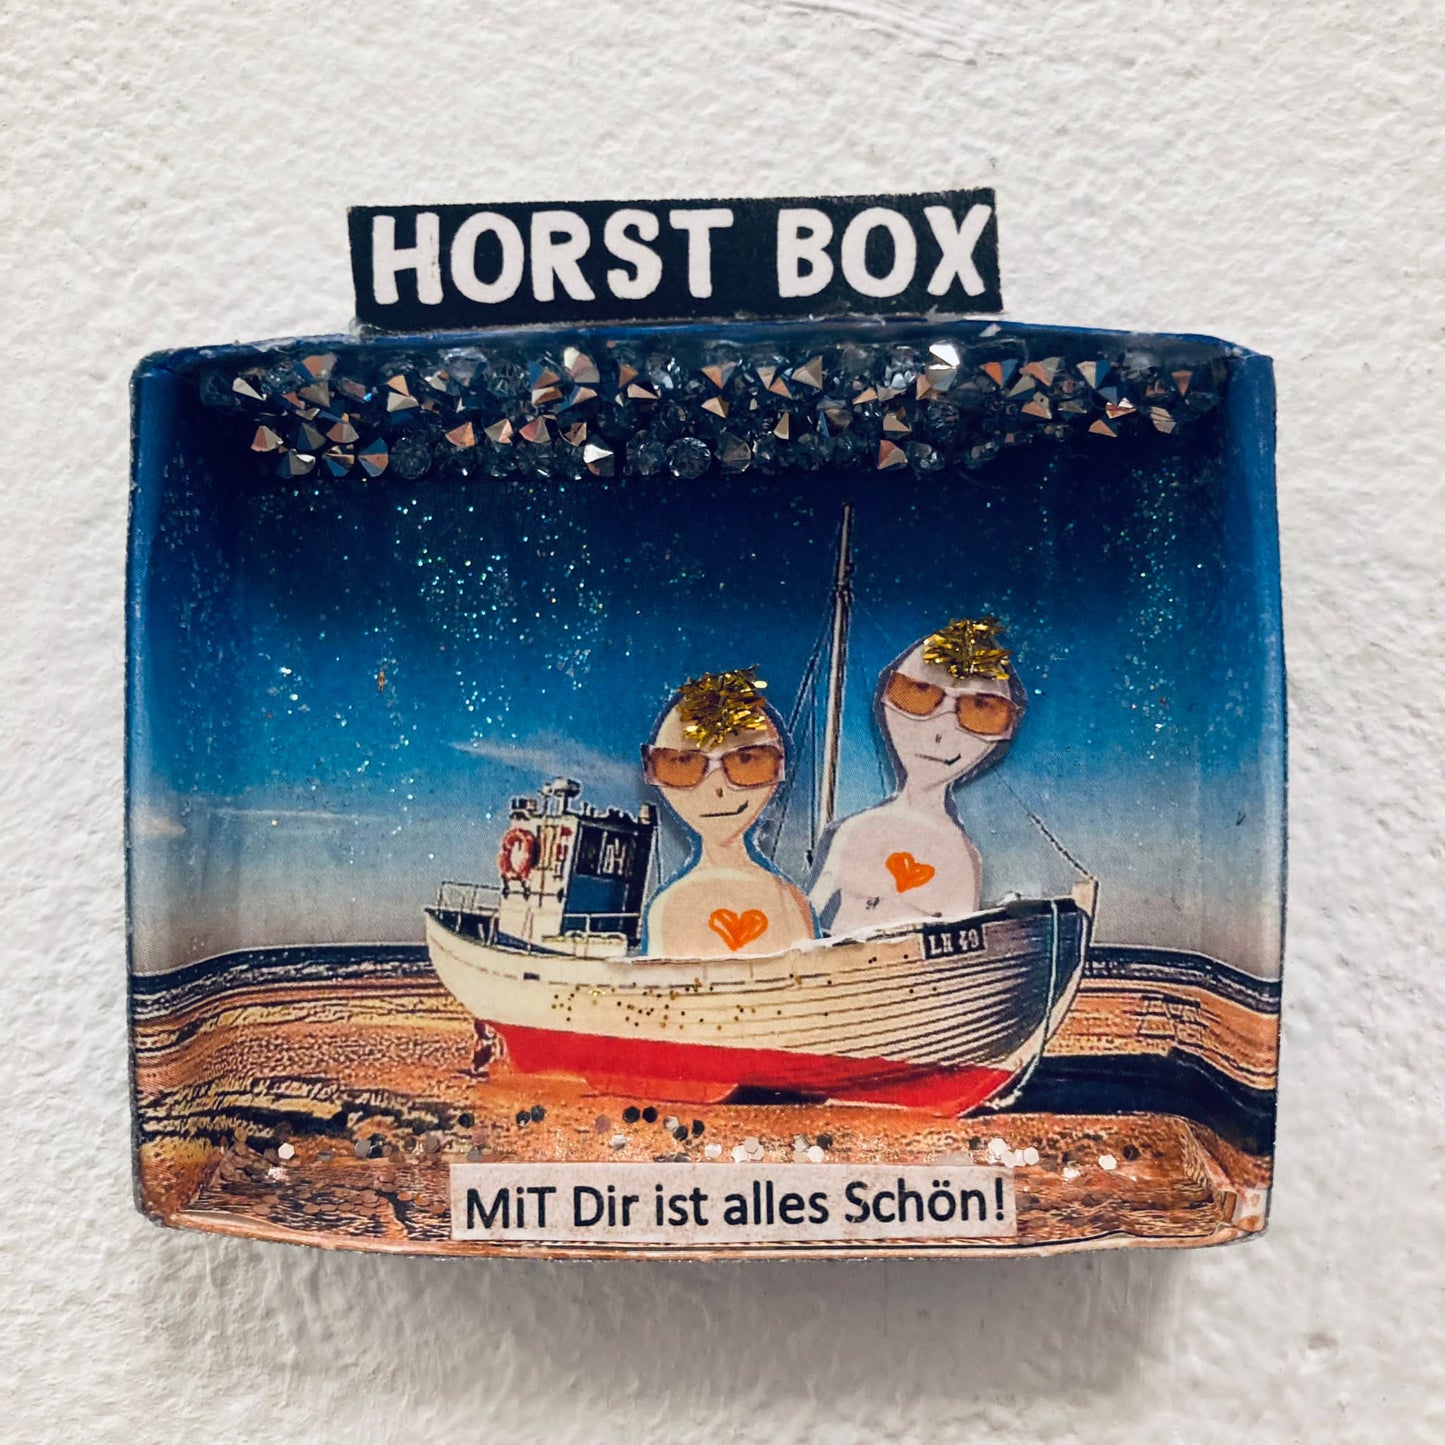 Horst Box // MiT Dir ist alles Schön!